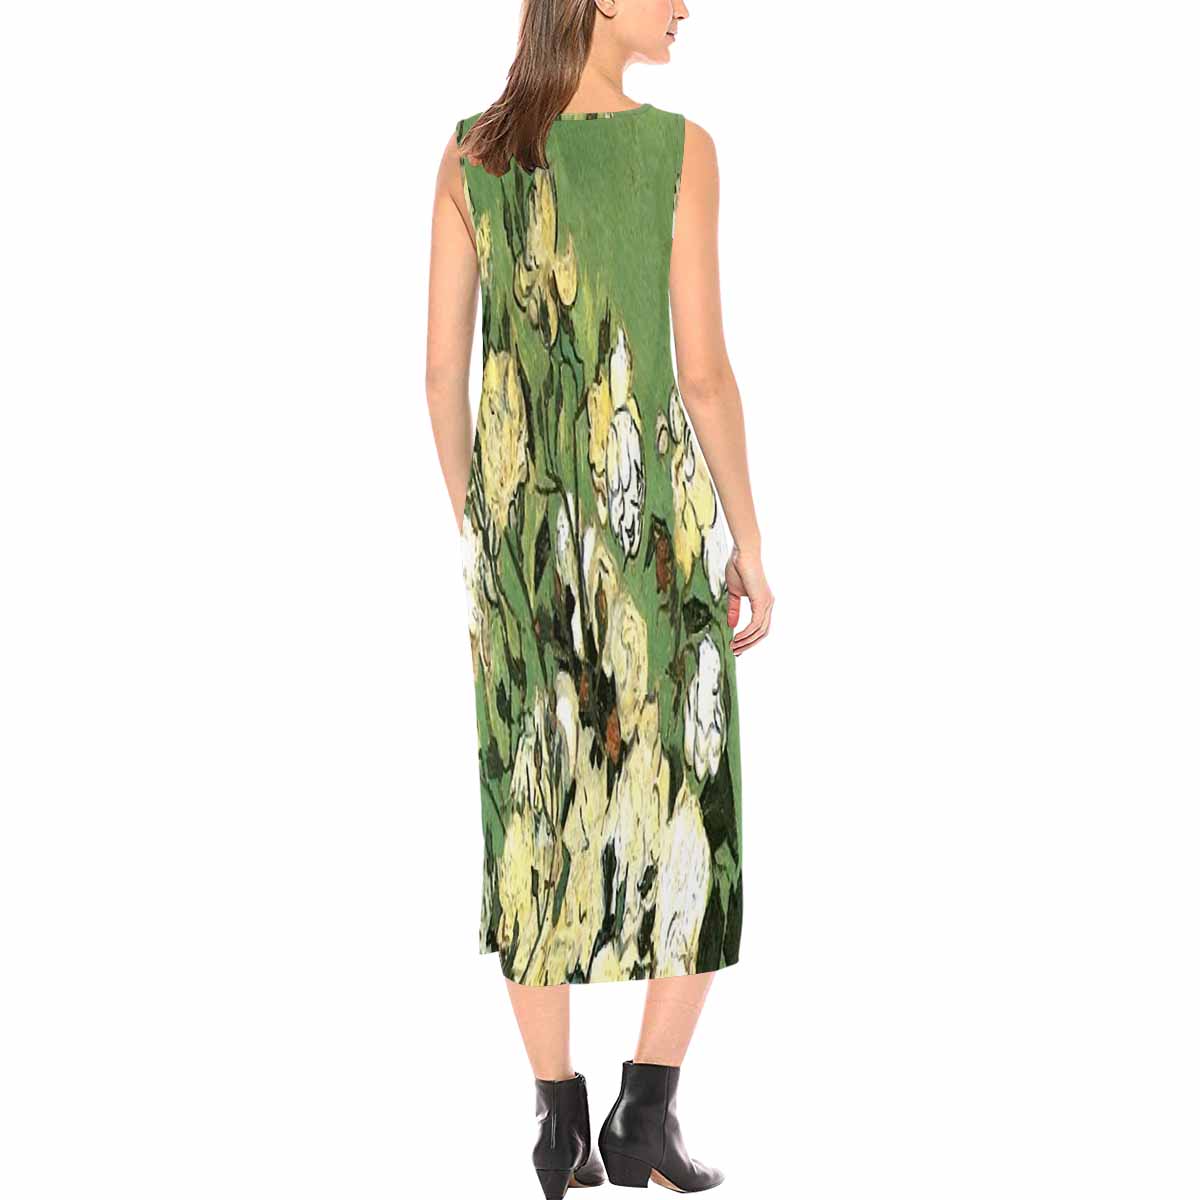 Vintage floral long dress, model D09538 Design 55